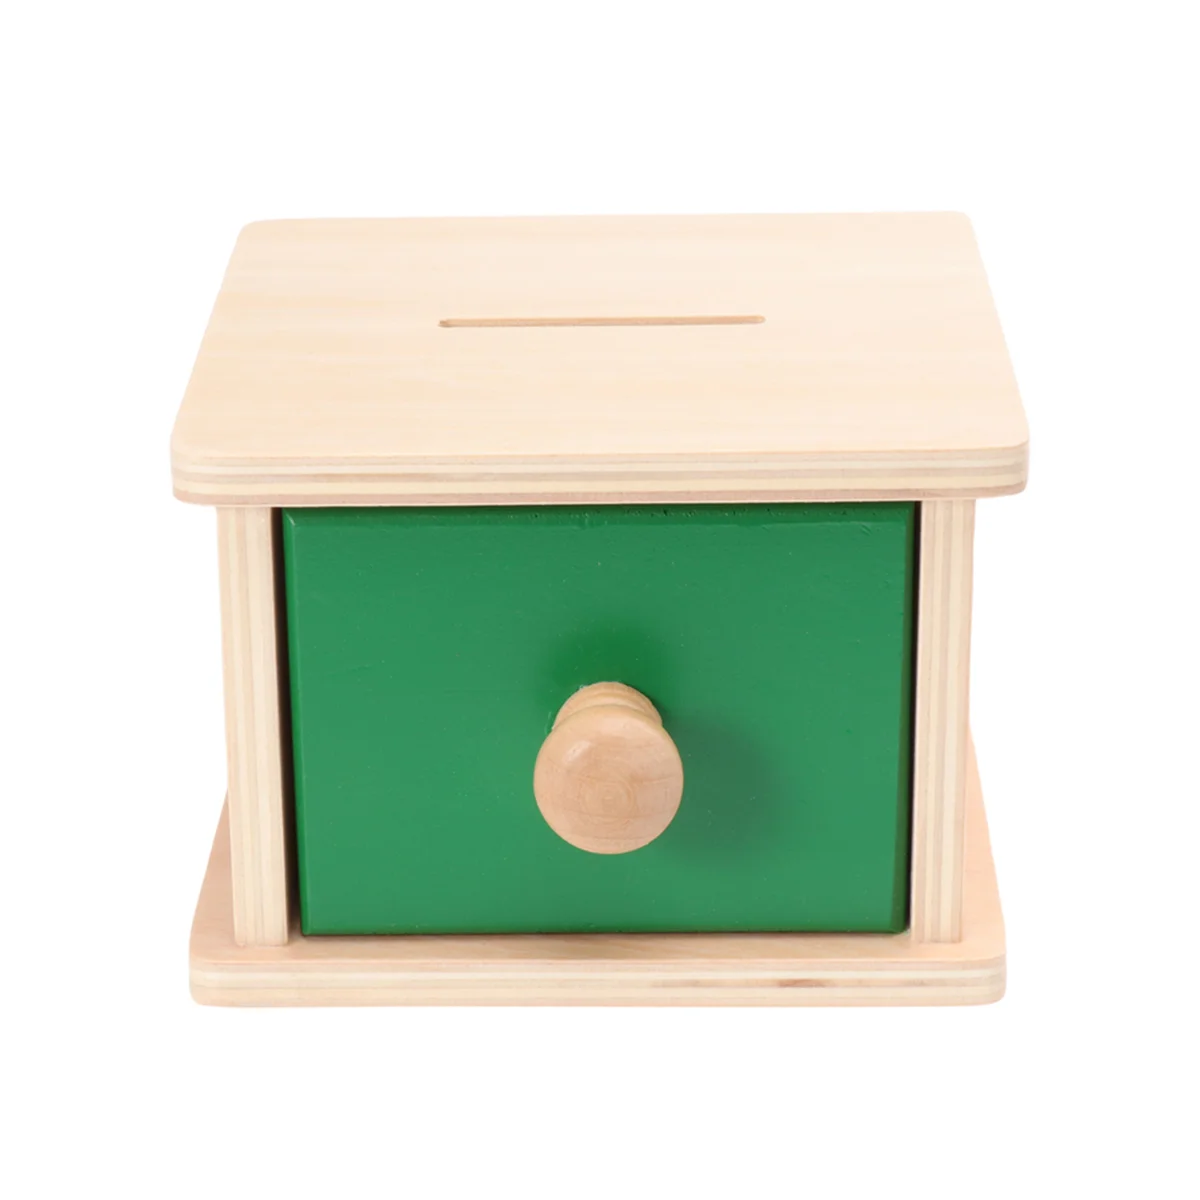 

Деревянная коробка Монтессори для обучения детей дошкольного возраста